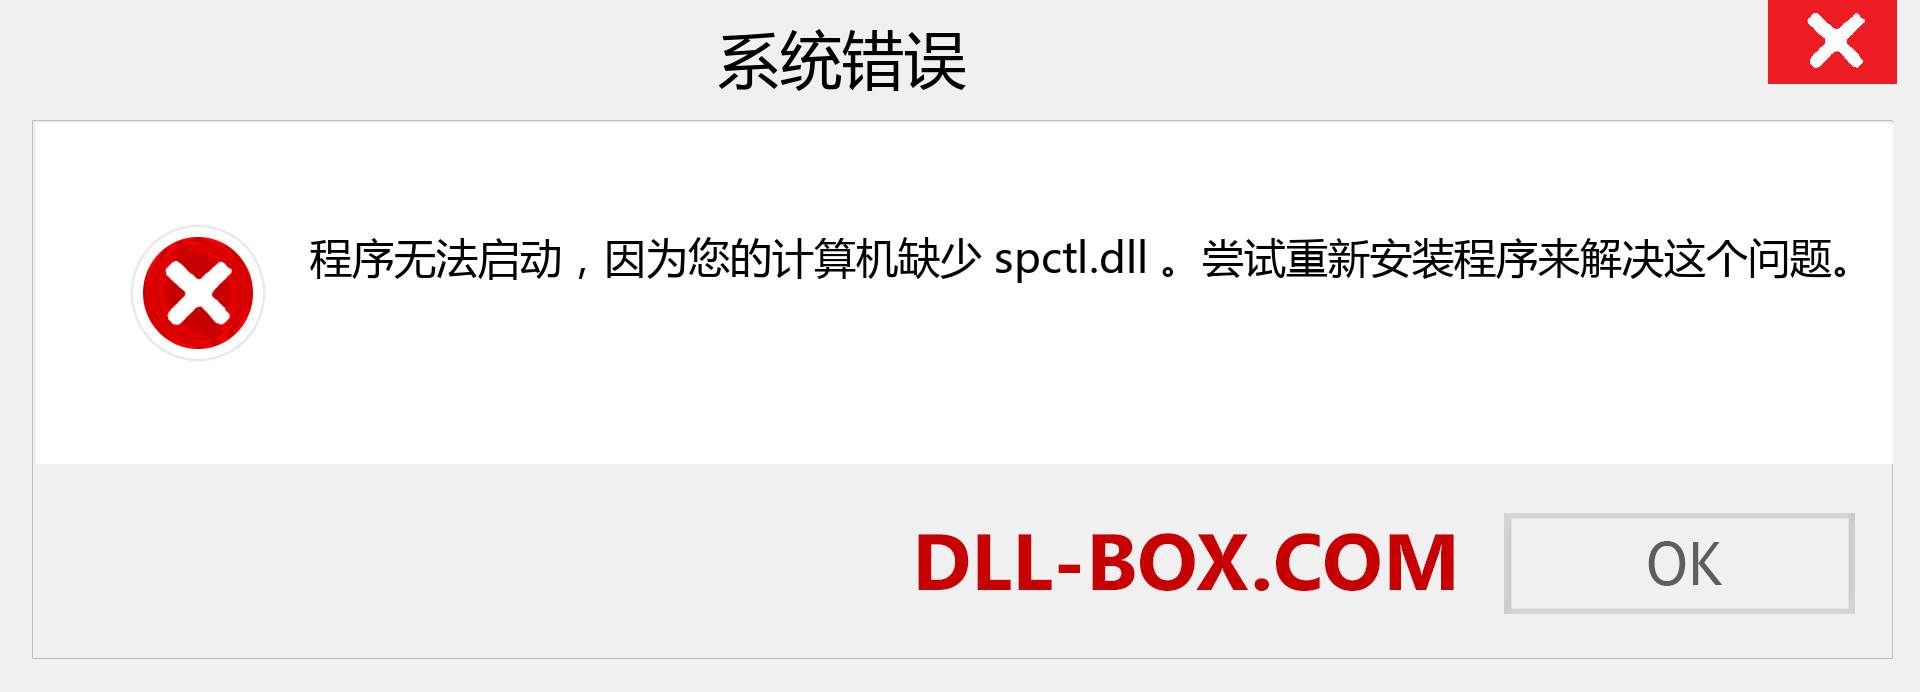 spctl.dll 文件丢失？。 适用于 Windows 7、8、10 的下载 - 修复 Windows、照片、图像上的 spctl dll 丢失错误